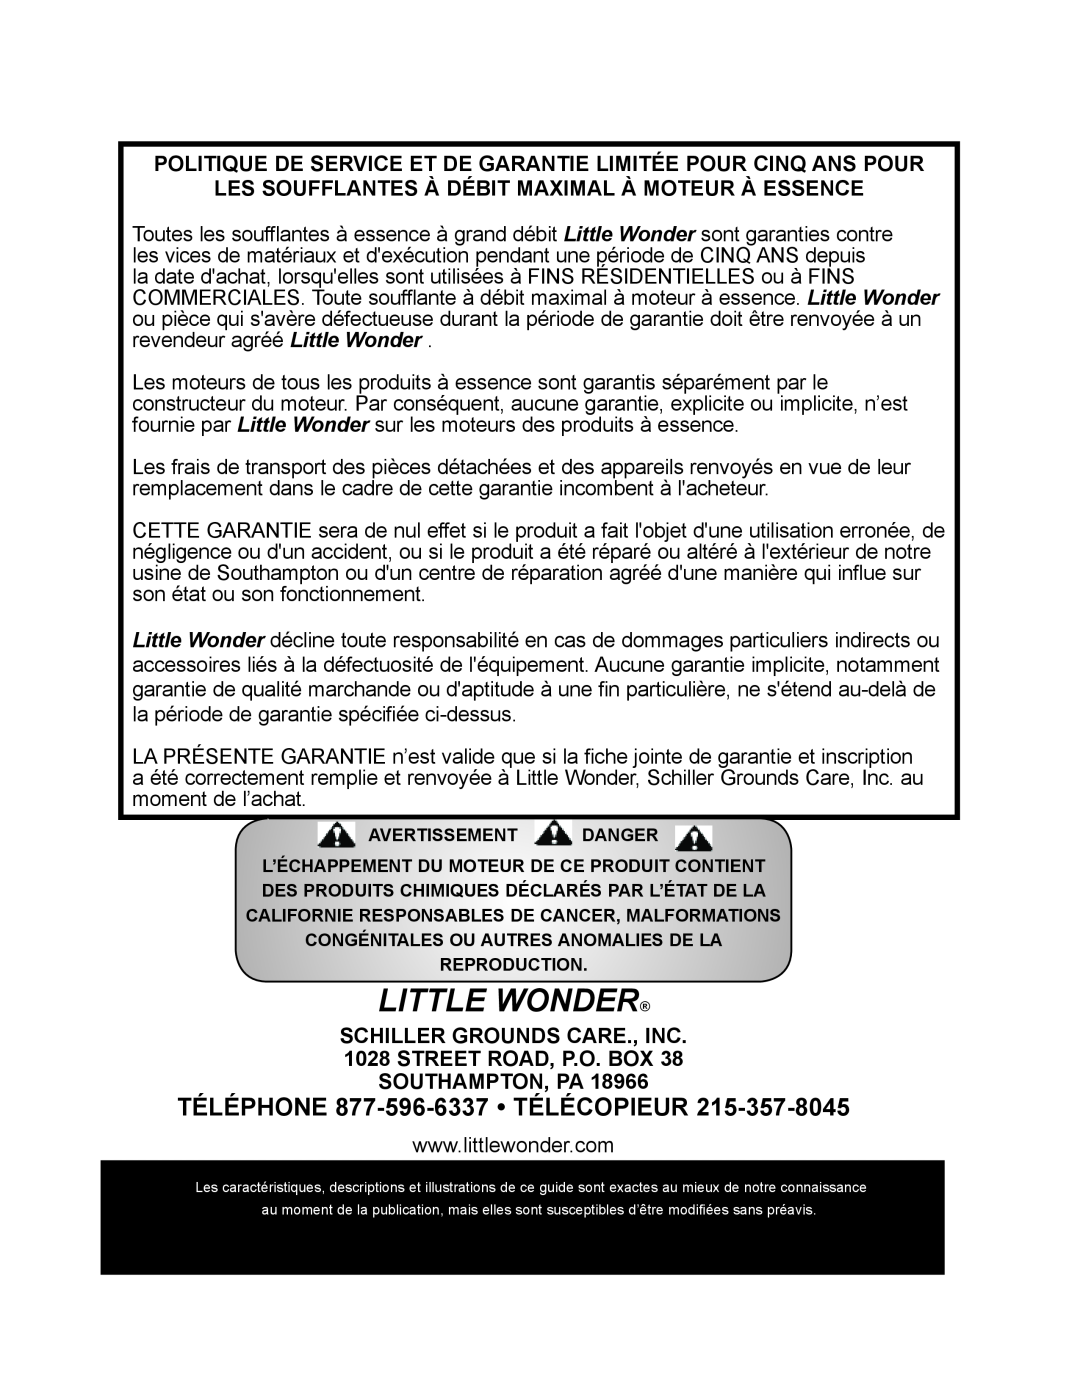 Little Wonder LB901-00-01 technical manual TÉLÉPHONE 877-596-6337 TÉLÉCOPIEUR, Little Wonder 